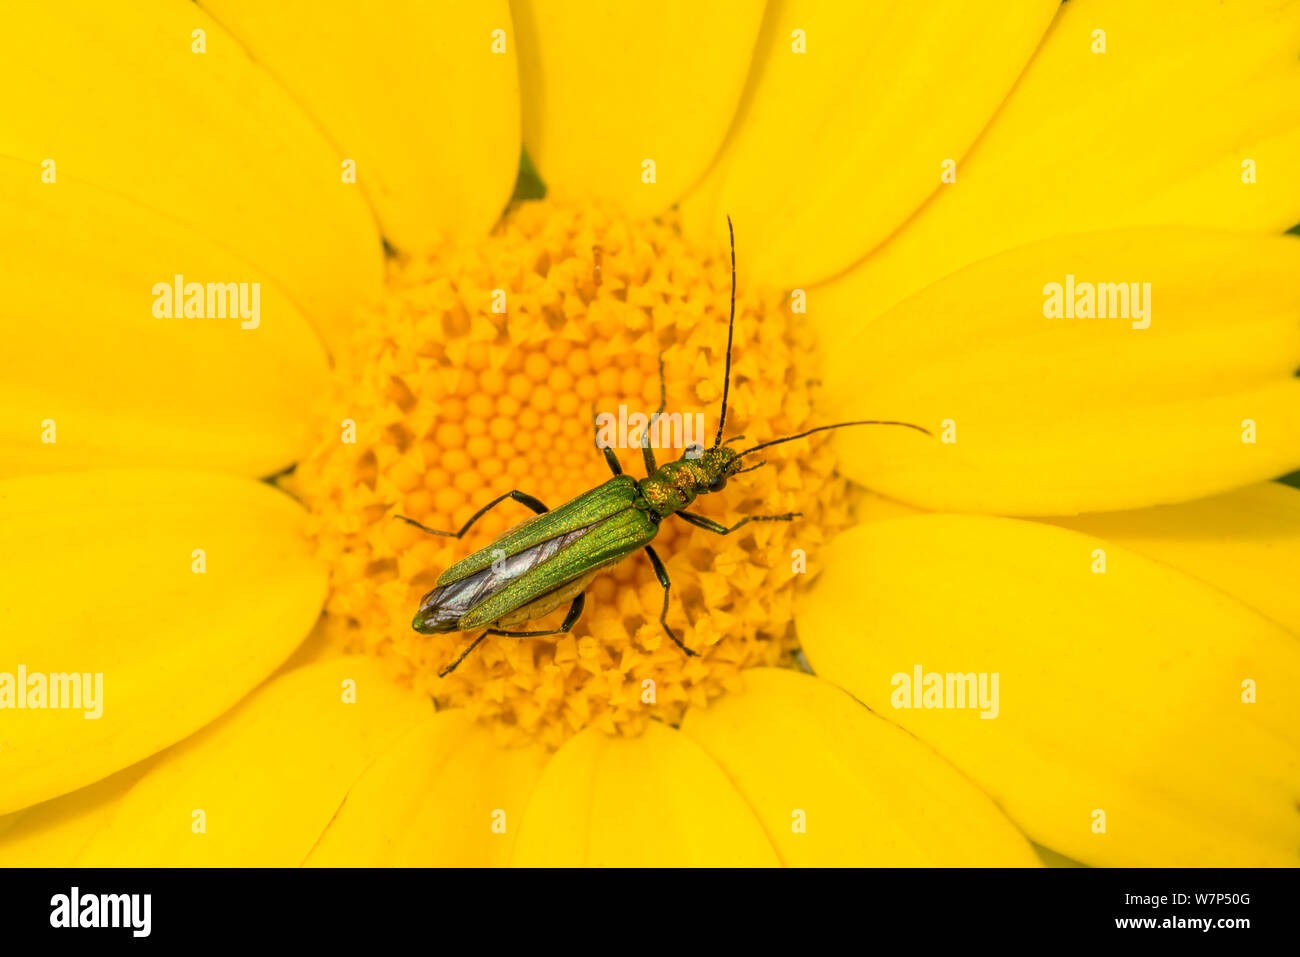 Flower beetle (Oedemera nobilis) se nourrissant sur le maïs Marigold (Chrysanthemum segetum), Crantock, près de Newquay, Cornwall, UK. Juin Banque D'Images